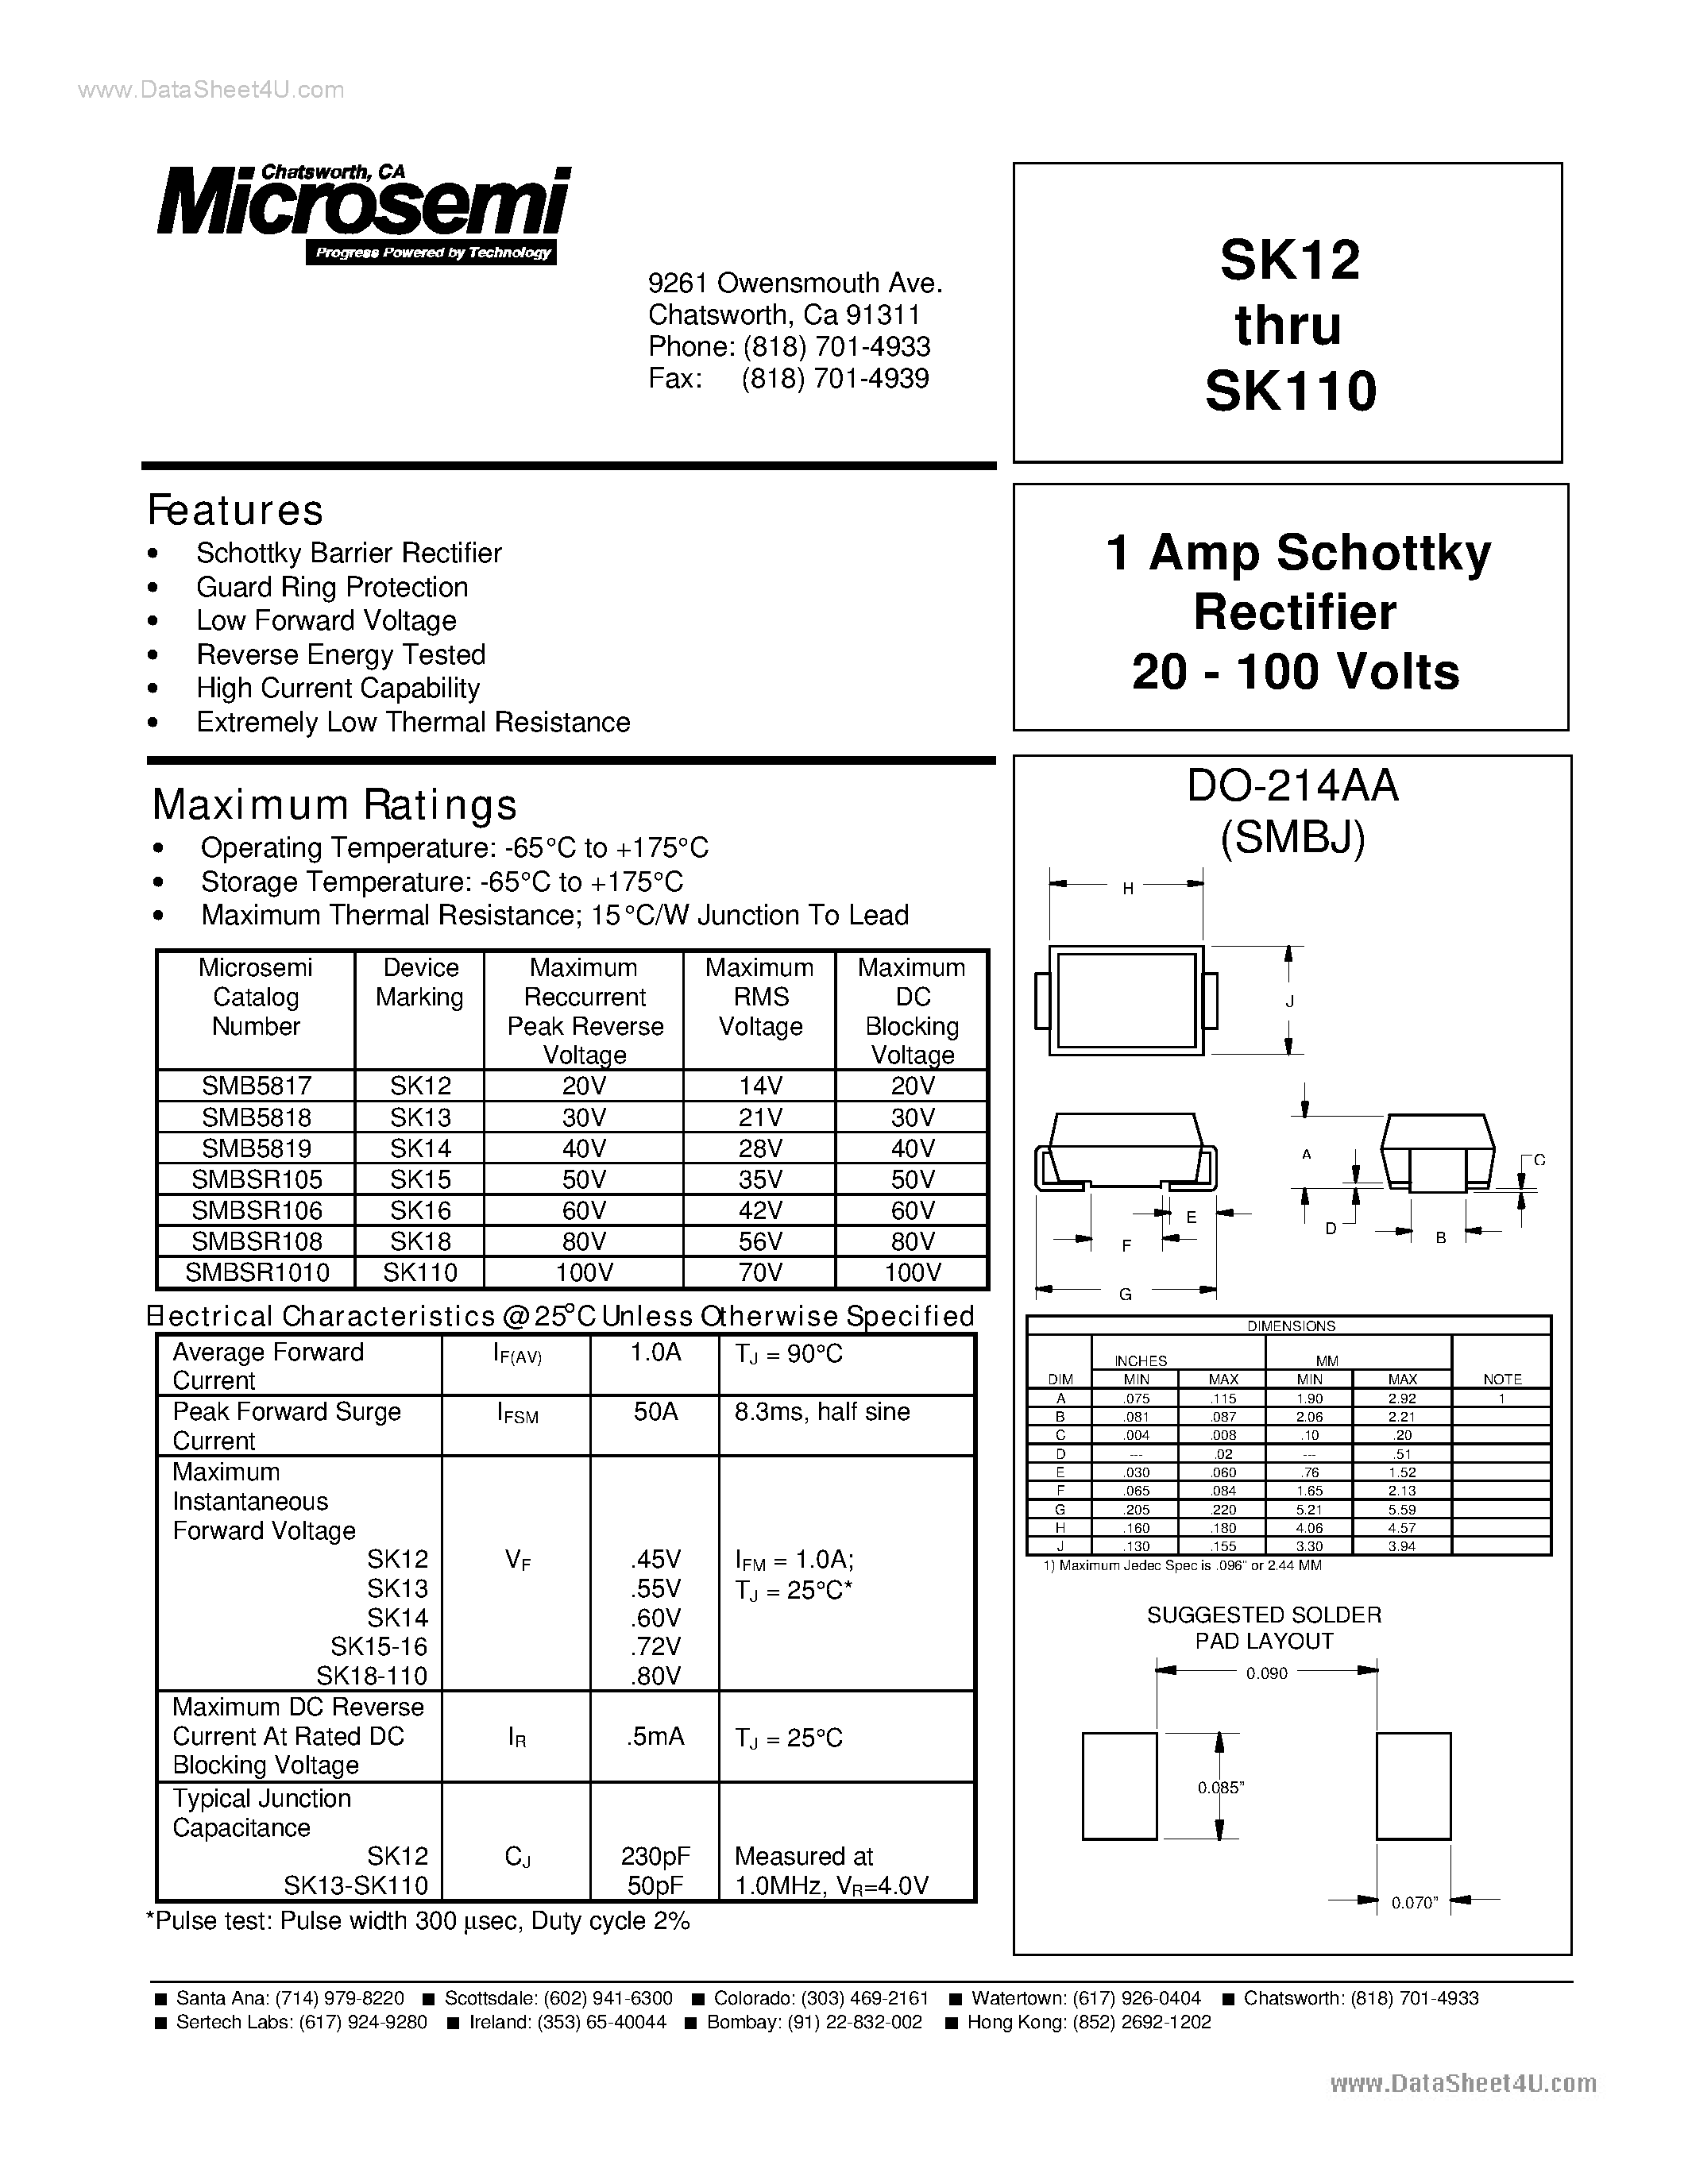 Datasheet SMB5817 - (SMB5817 - SMB5819) 1A Schottky Rectifier page 1